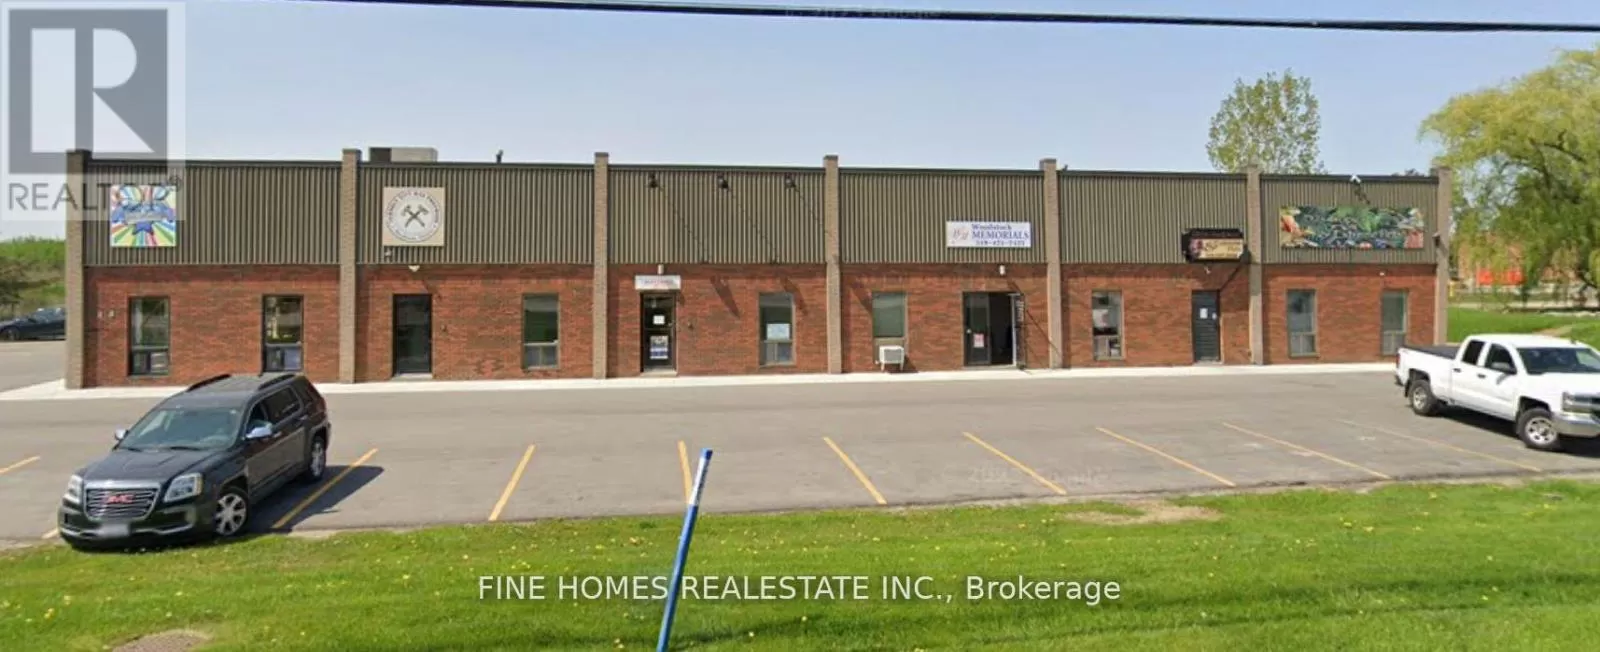 Multi-Tenant Industrial for rent: #4 -1057 Parkinson Rd, Woodstock, Ontario N4S 7W3